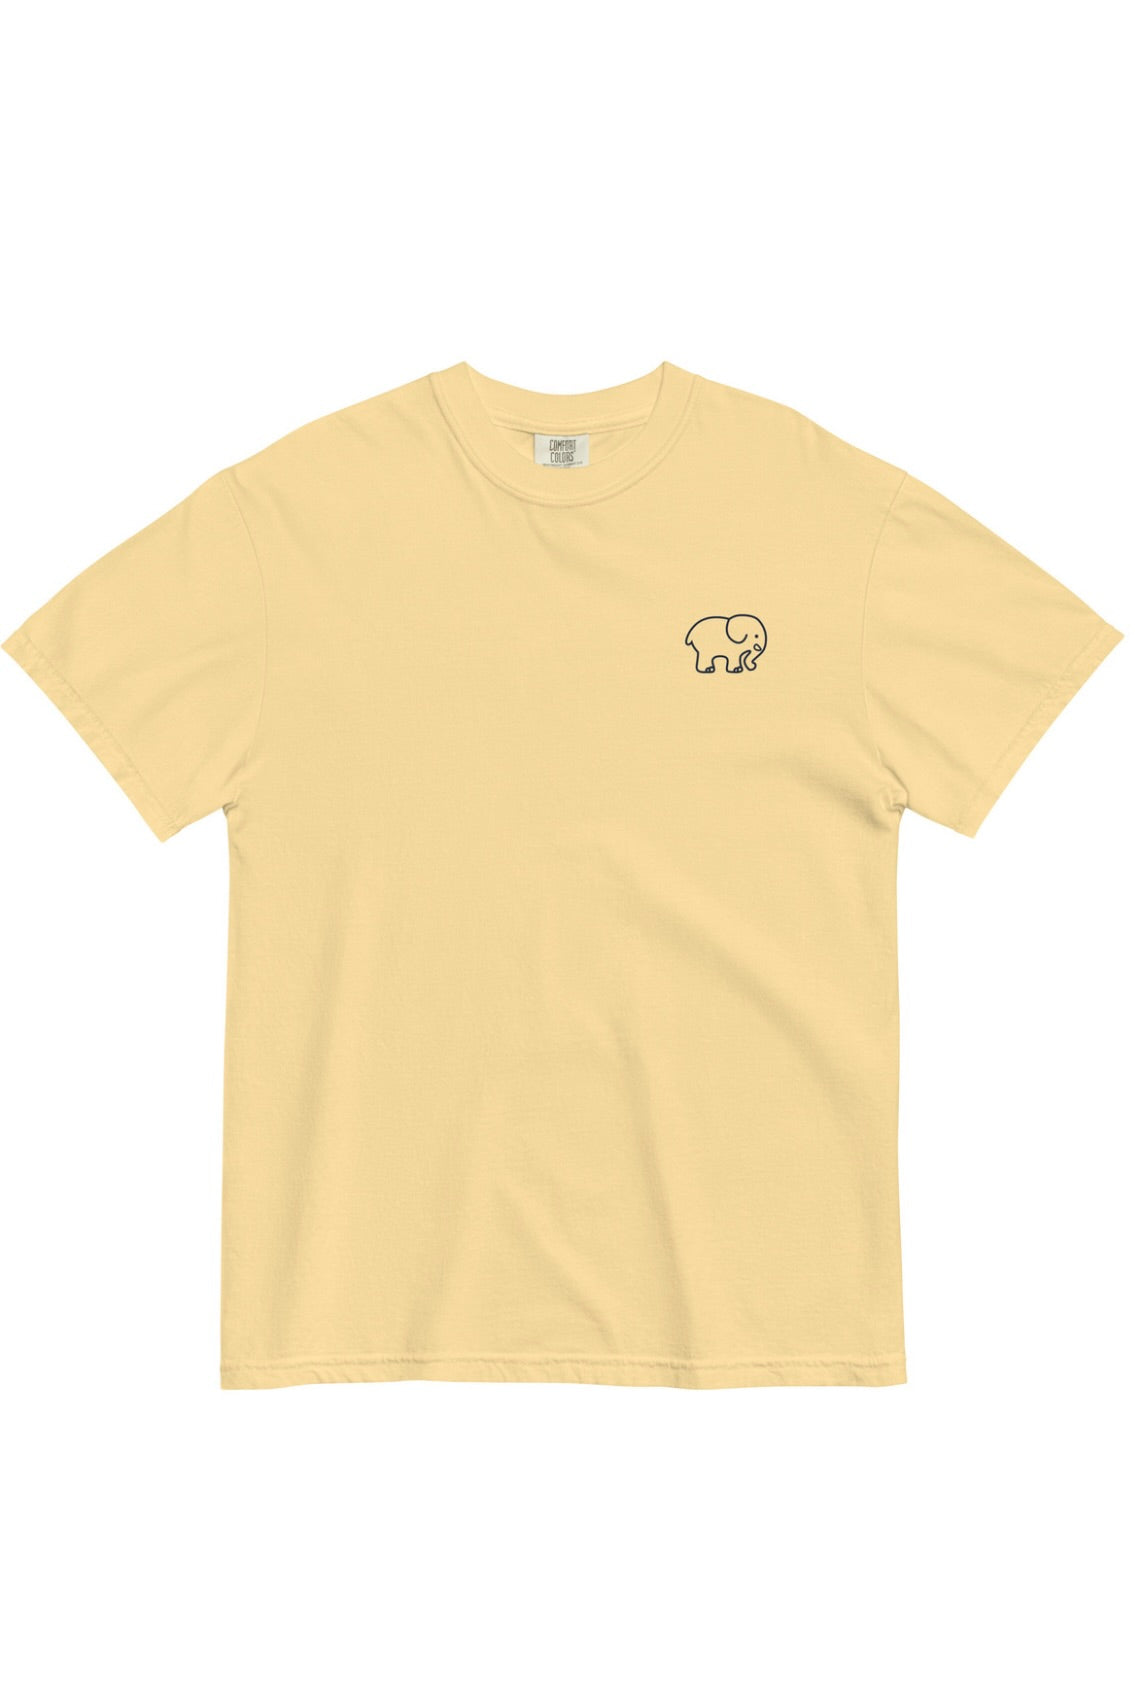 Sunflower Bees Unisex Heavyweight T-shirt